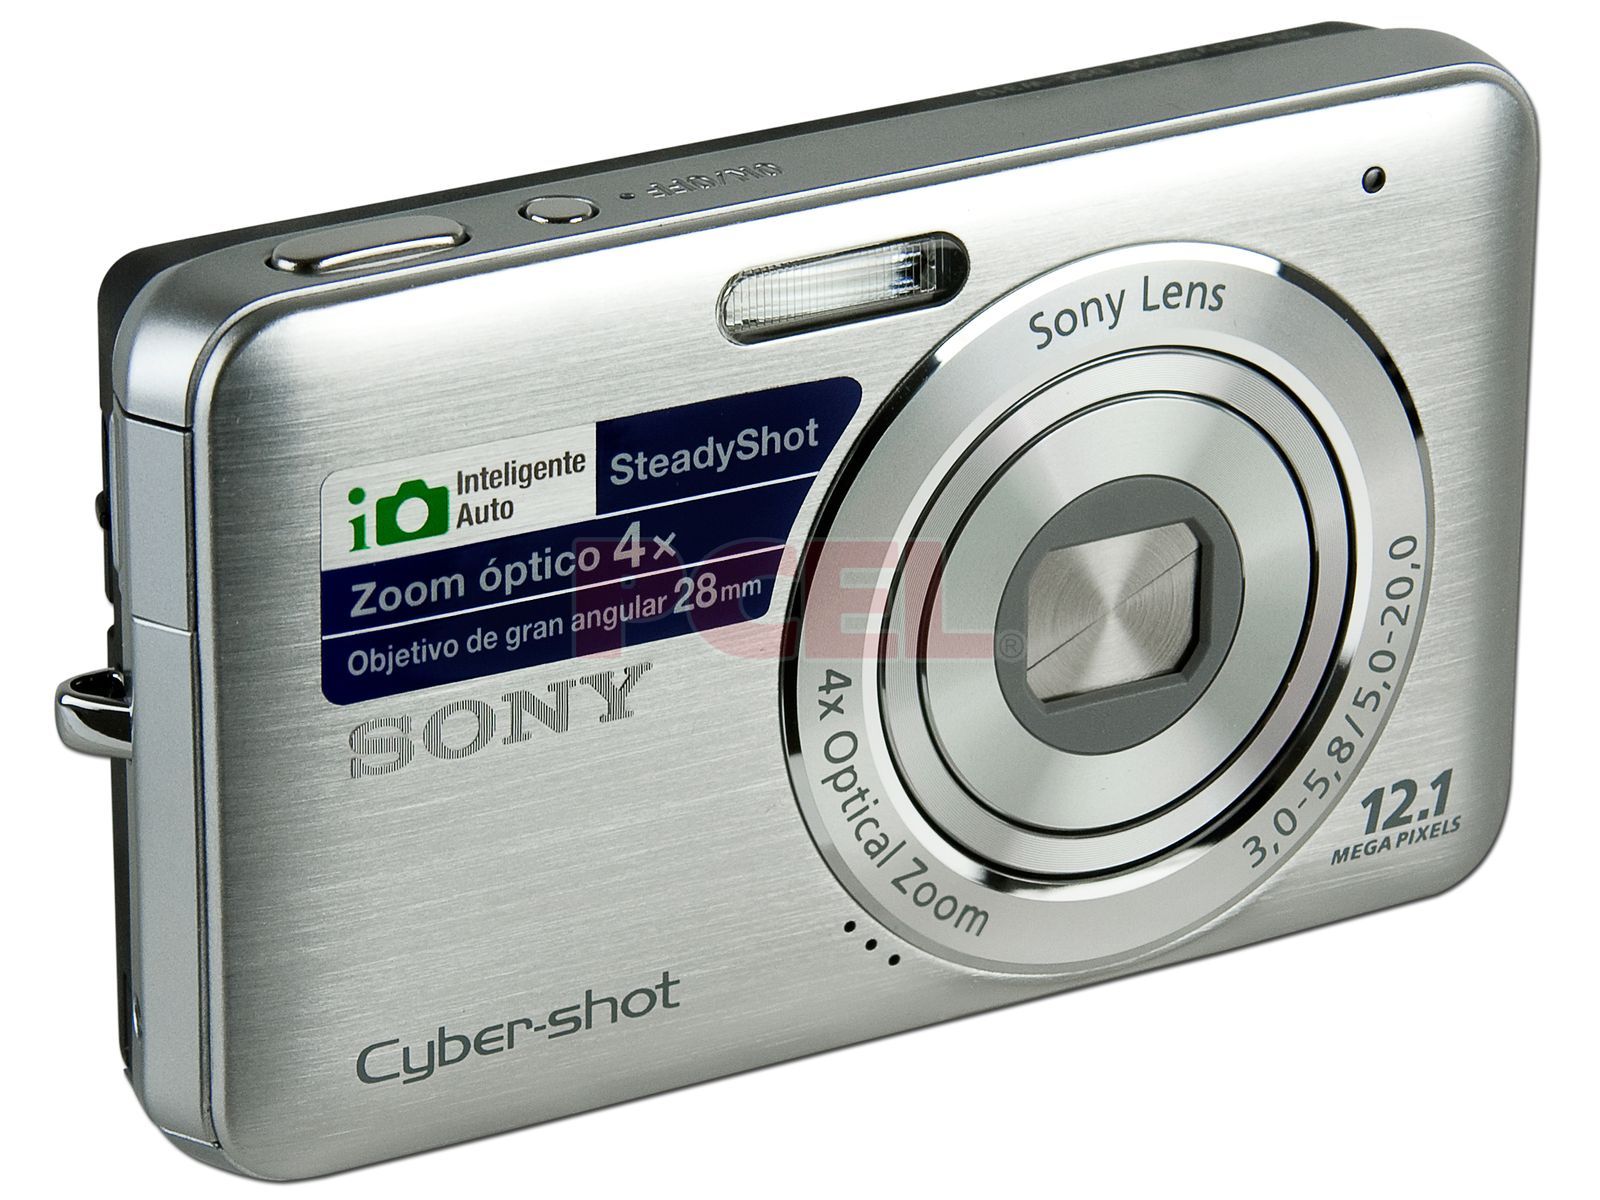  Sony Cámara digital DSCP10 Cyber-shot de 5MP con zoom óptico 3x  : Electrónica